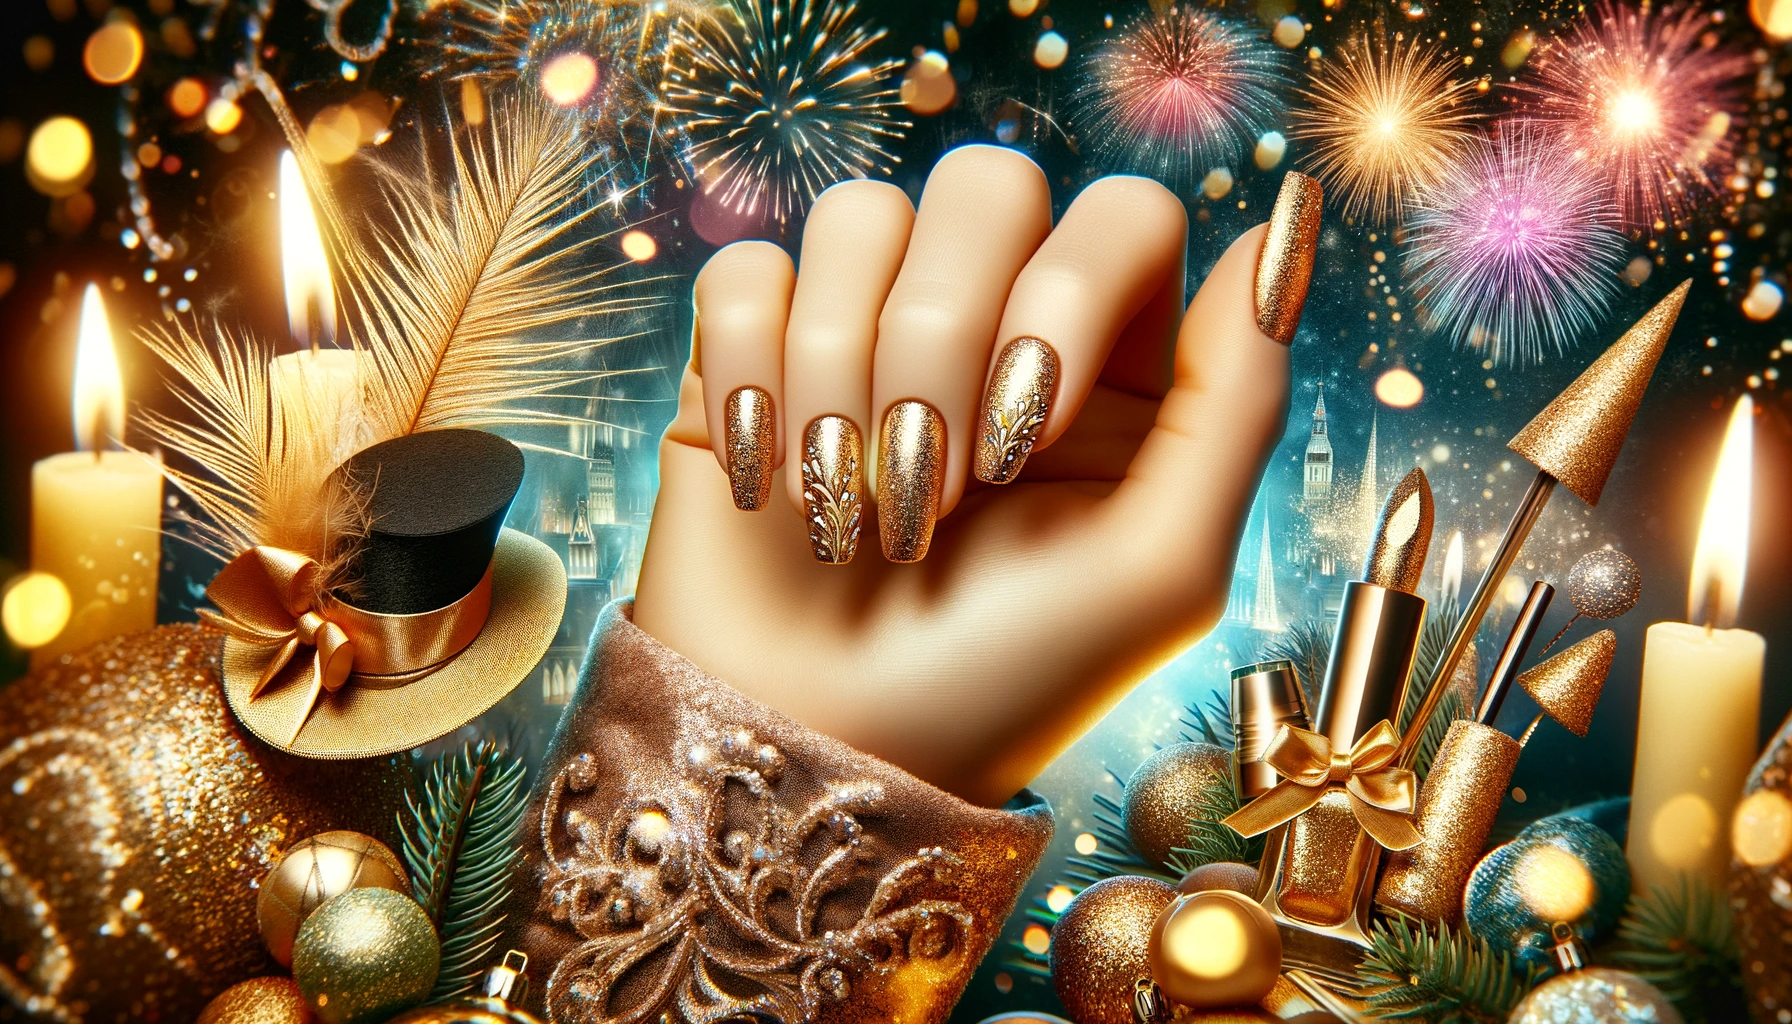 Zaczarowane stylizacje paznokci na Sylwestra w złotym brokacie, na tle bajkowej sceny noworocznej z żywymi fajerwerkami i glamour atmosferą, idealne dla artykułu o stylizacjach na Nowy Rok